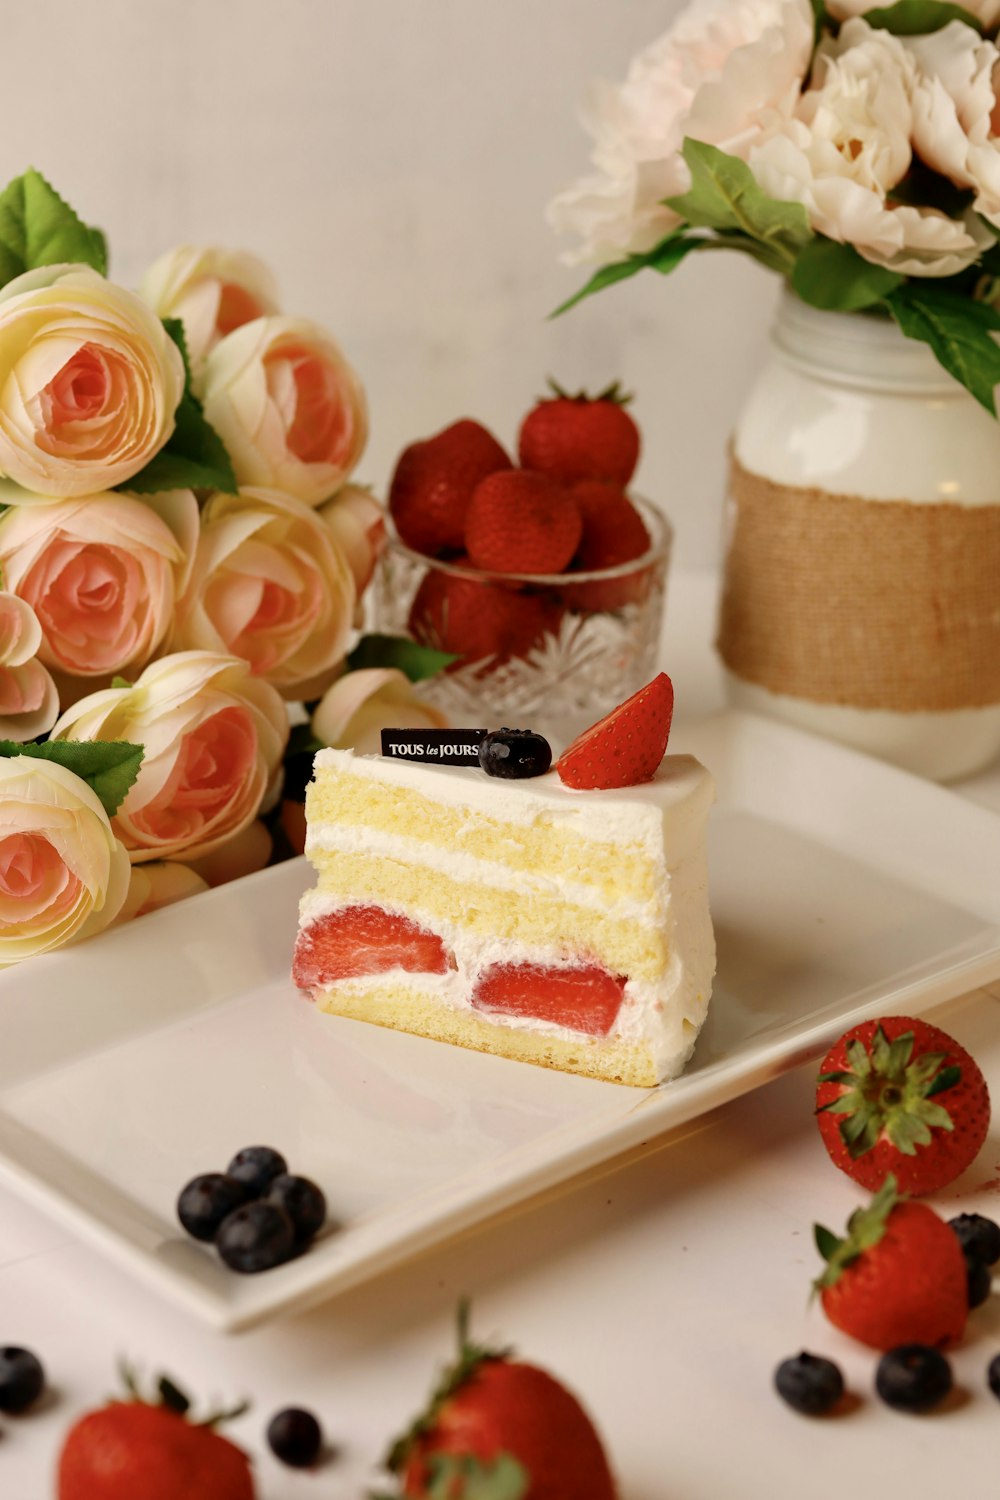 Un pedazo de pastel en un plato con fresas y arándanos